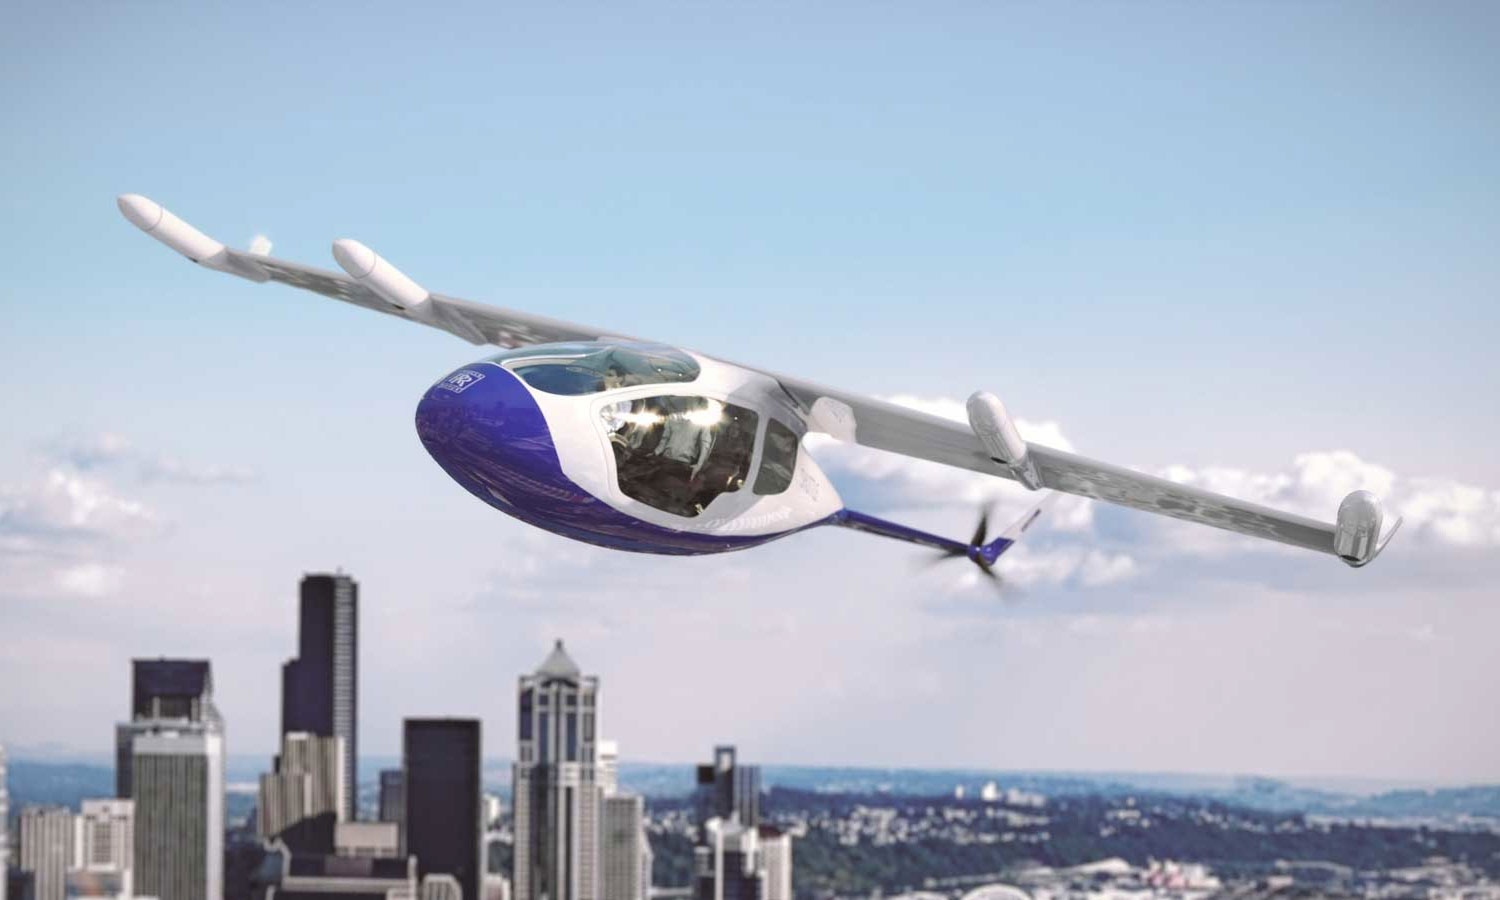 劳斯莱斯推出 “EVTOL” 空中飞行概念汽车